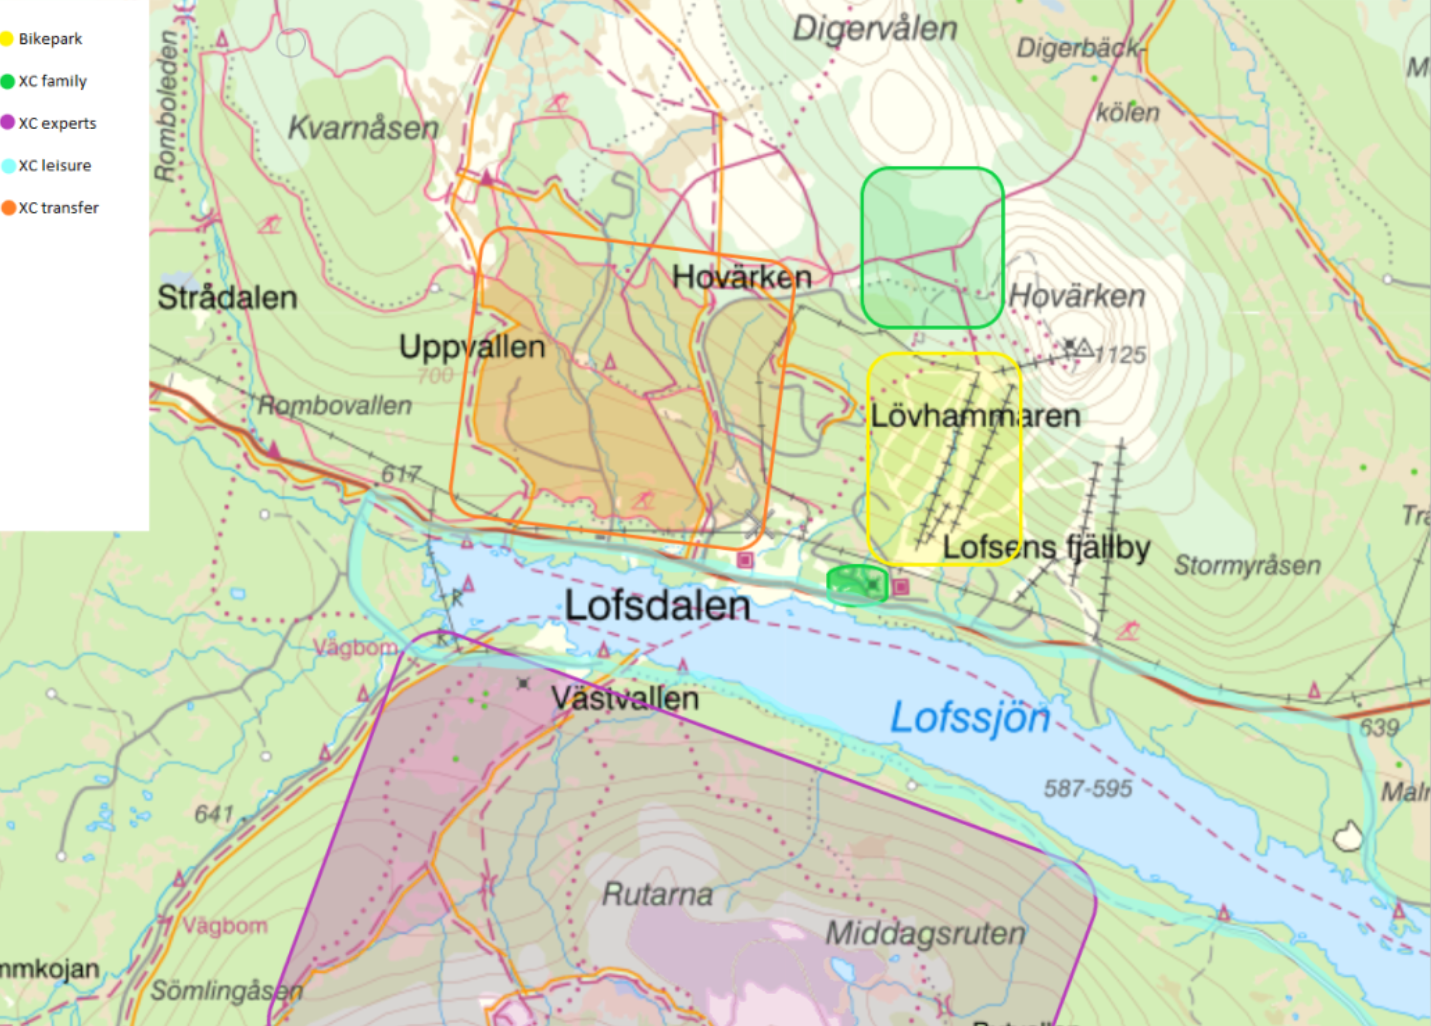 Projects in Lofsdalen | Lofsdalen